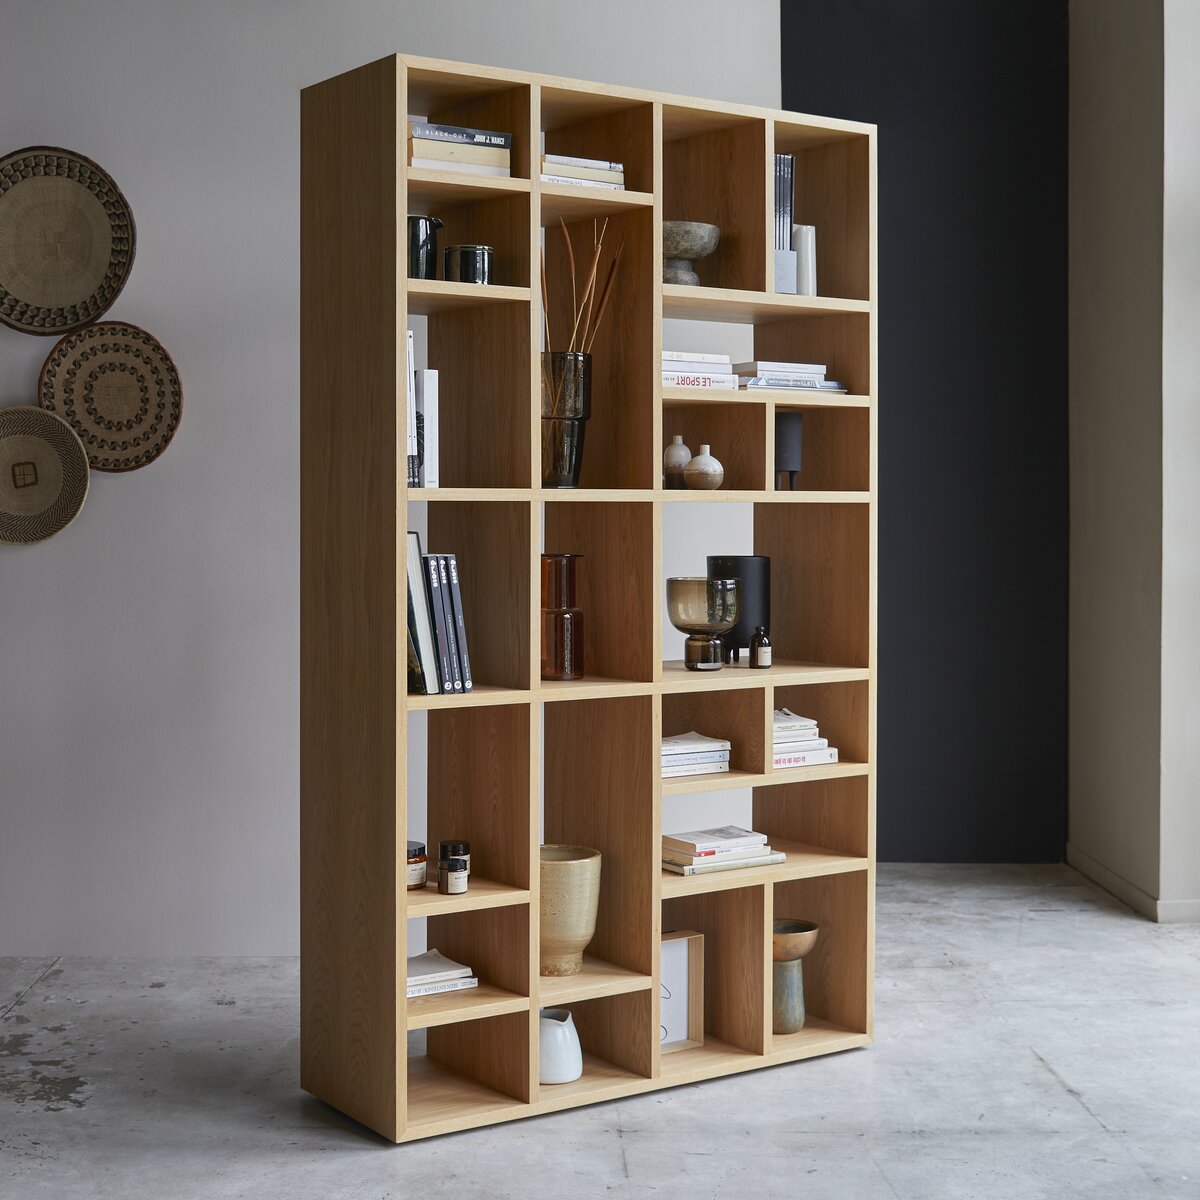 Hohes Bücherregal aus Eiche - Wohnzimmer / Bücherschränke - Tikamoon